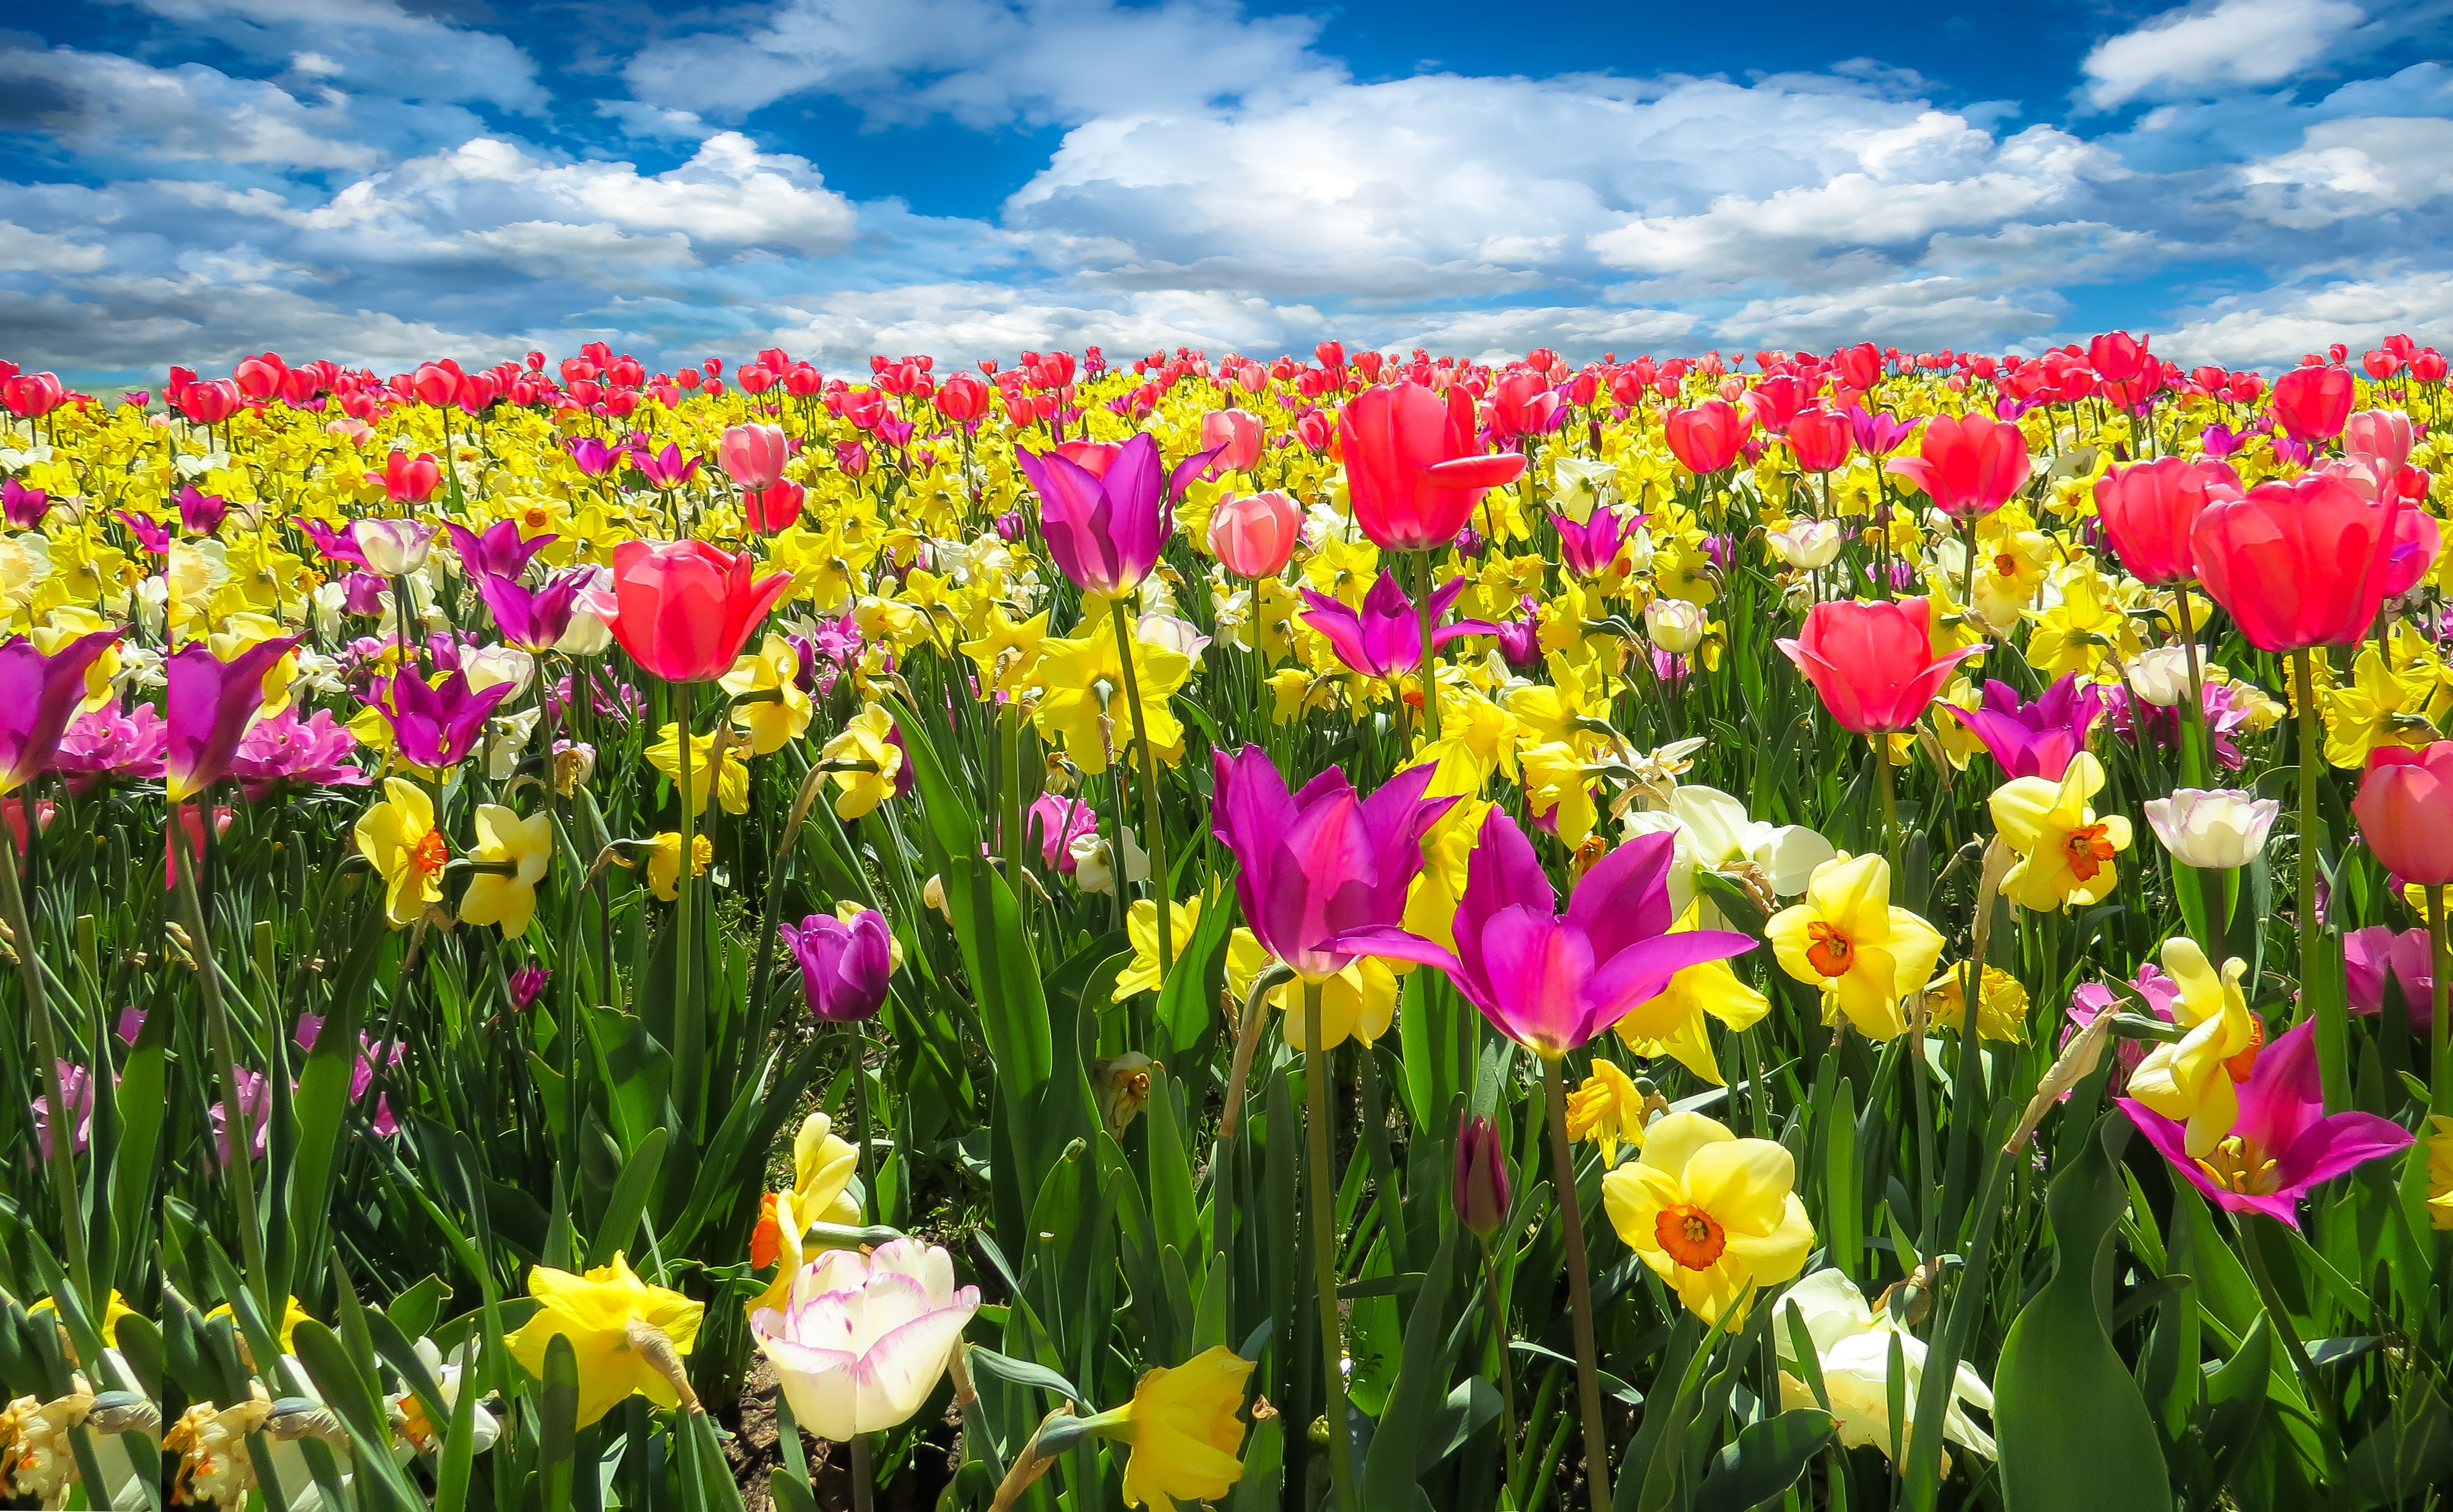 Champ de tulipes et de  jonquilles de couleurs variées : rose, jaune